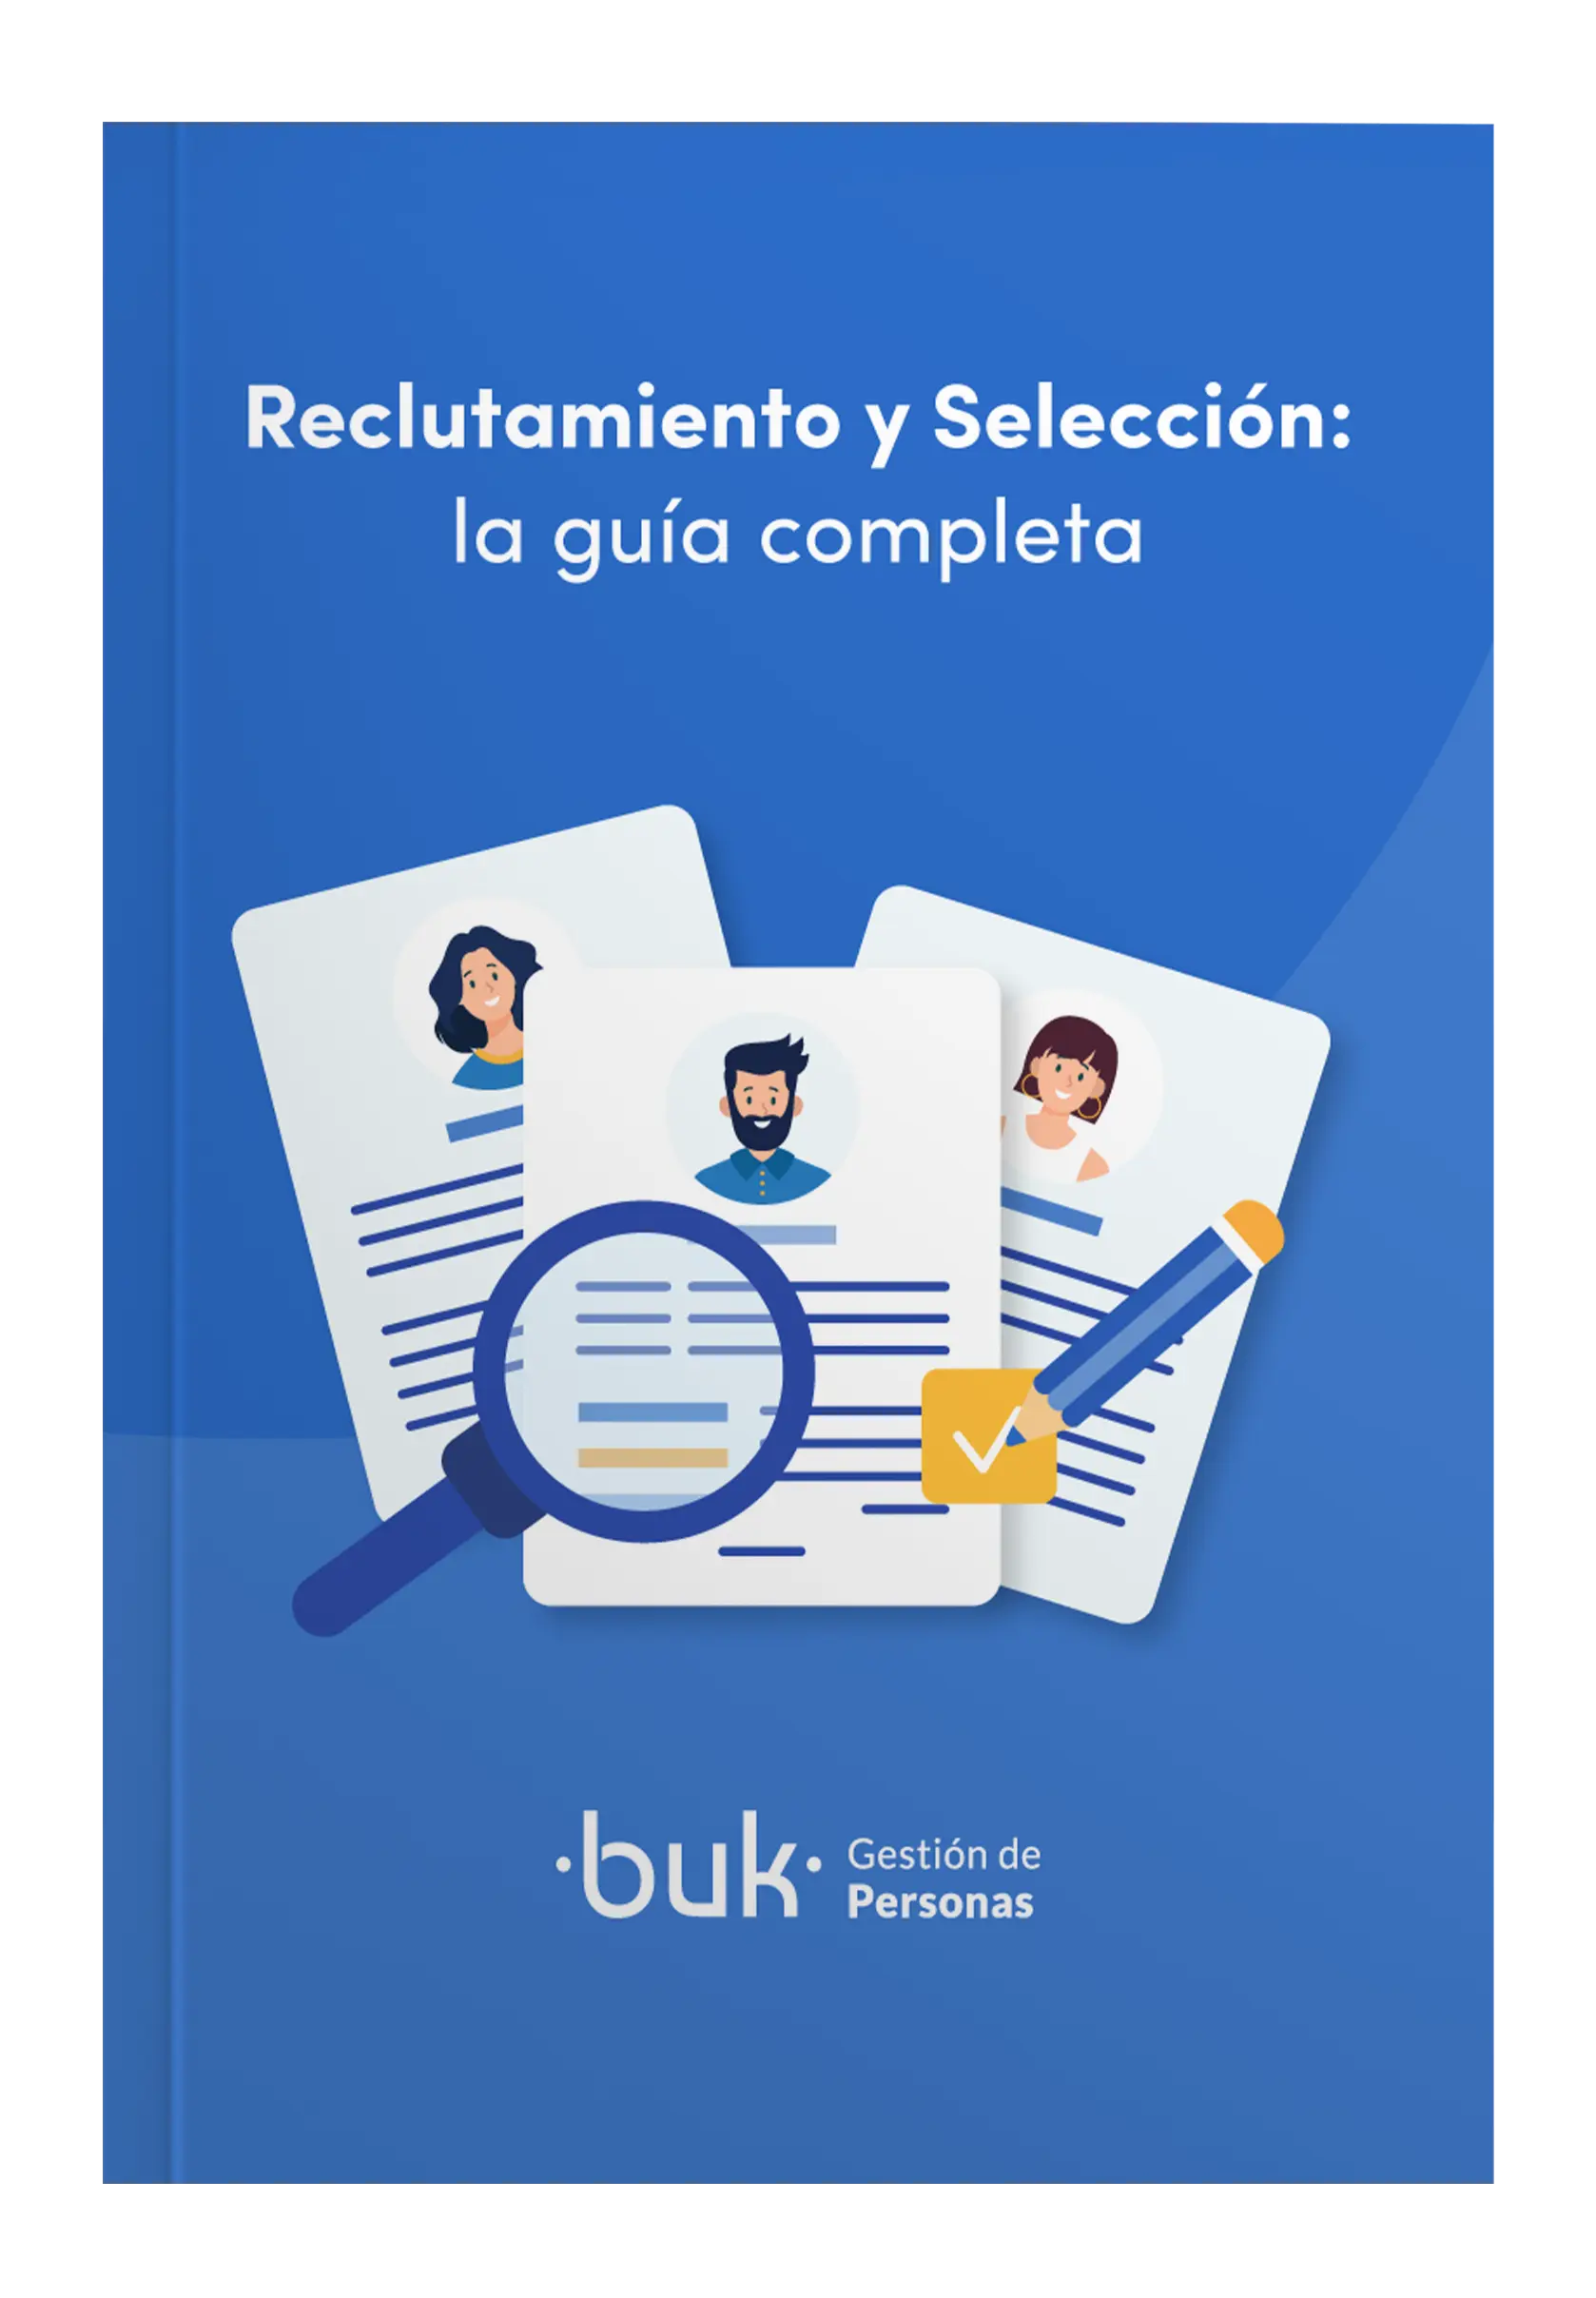 Pillar2_MX_Reclutamiento-y-seleccion_mockup